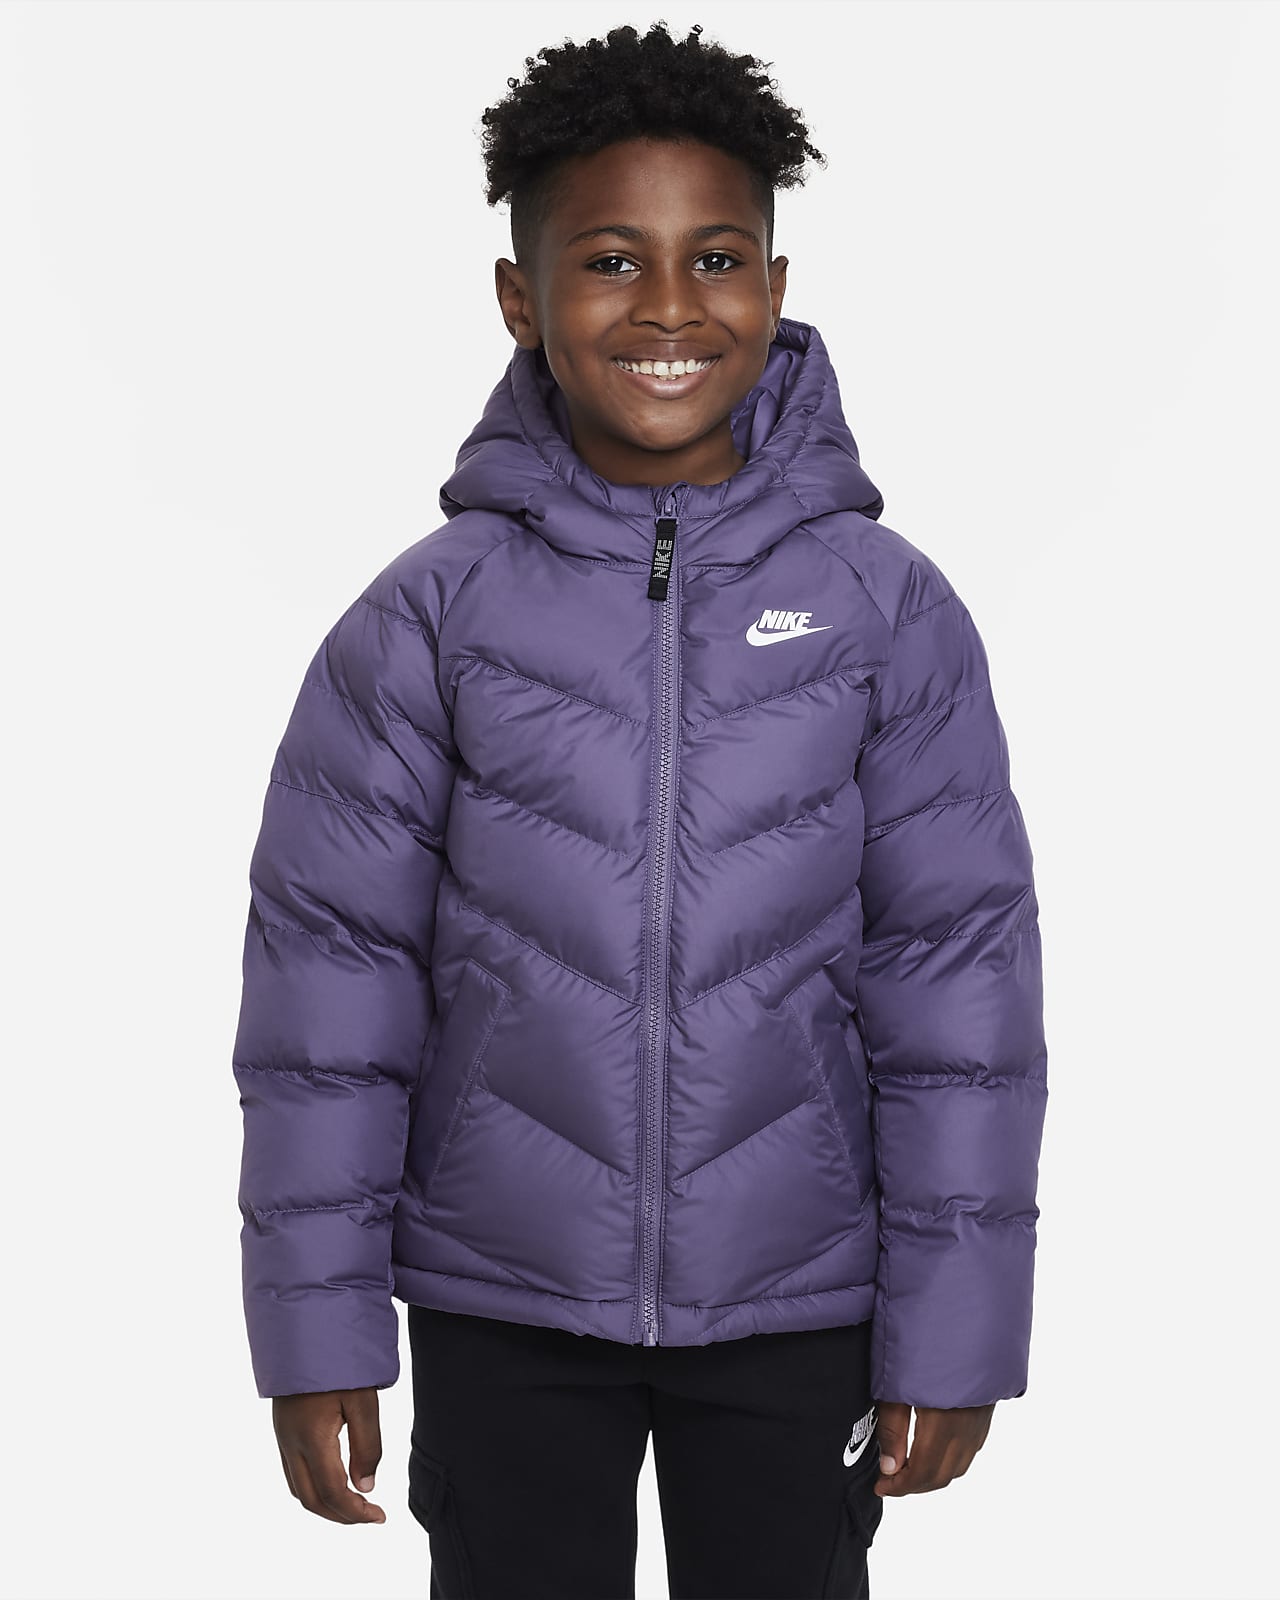 Nike Sportswear Jacke mit Kapuze und Synthetikfüllung für ältere Kinder